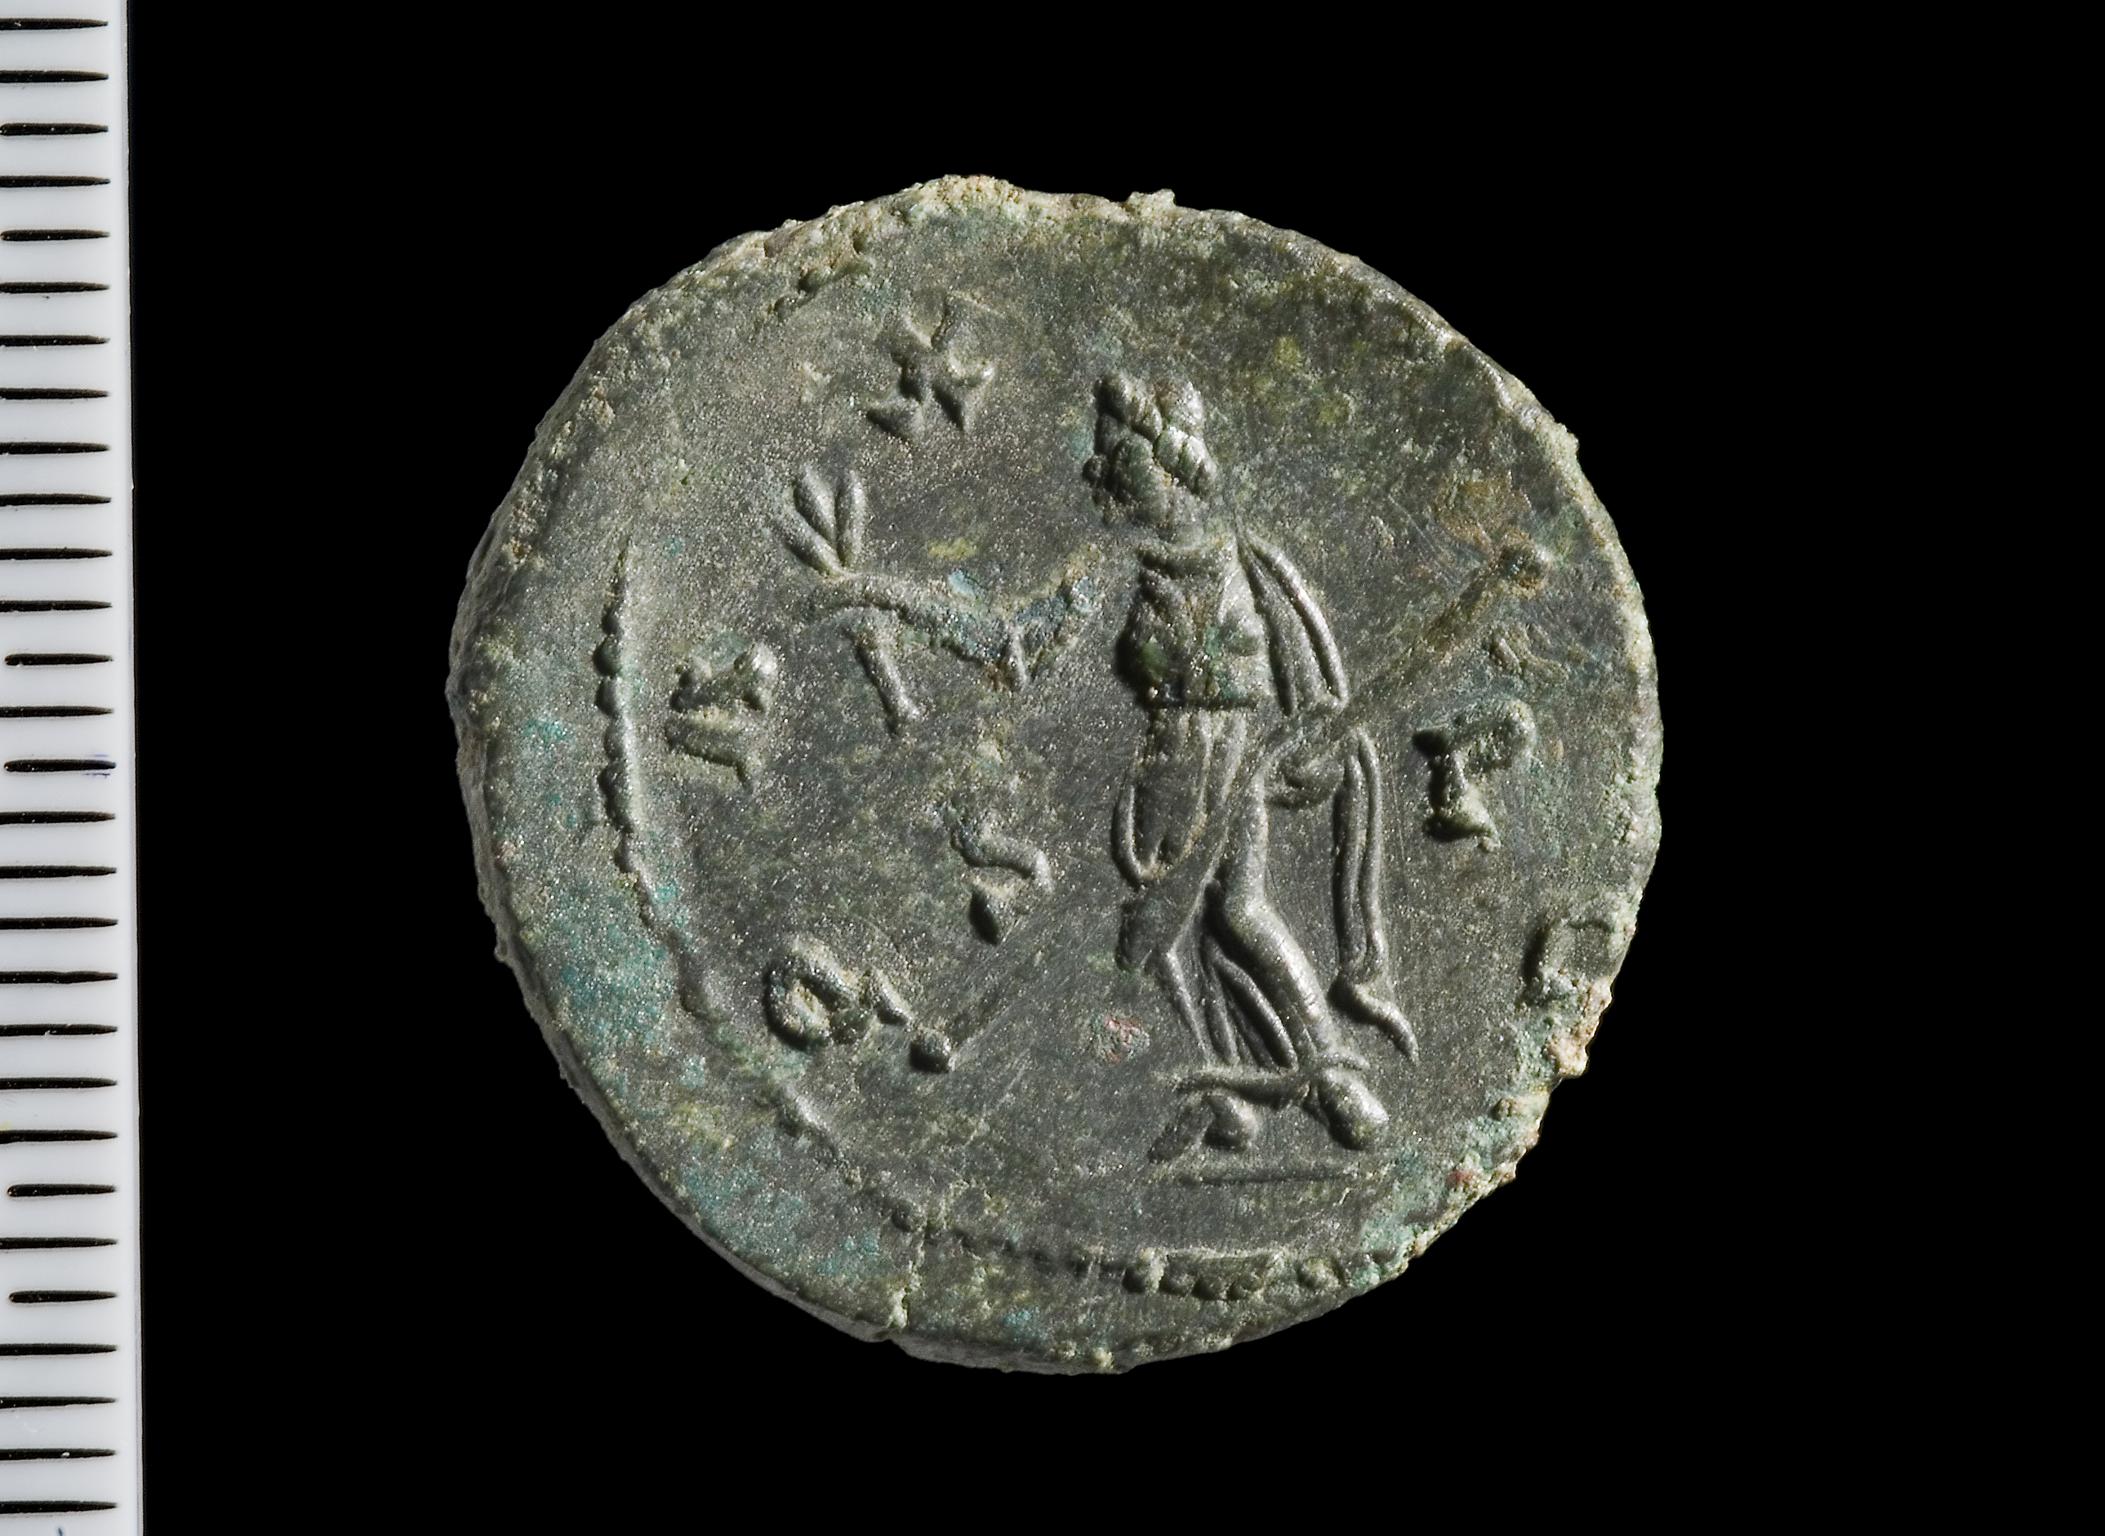 Caerwent forum basilica coins